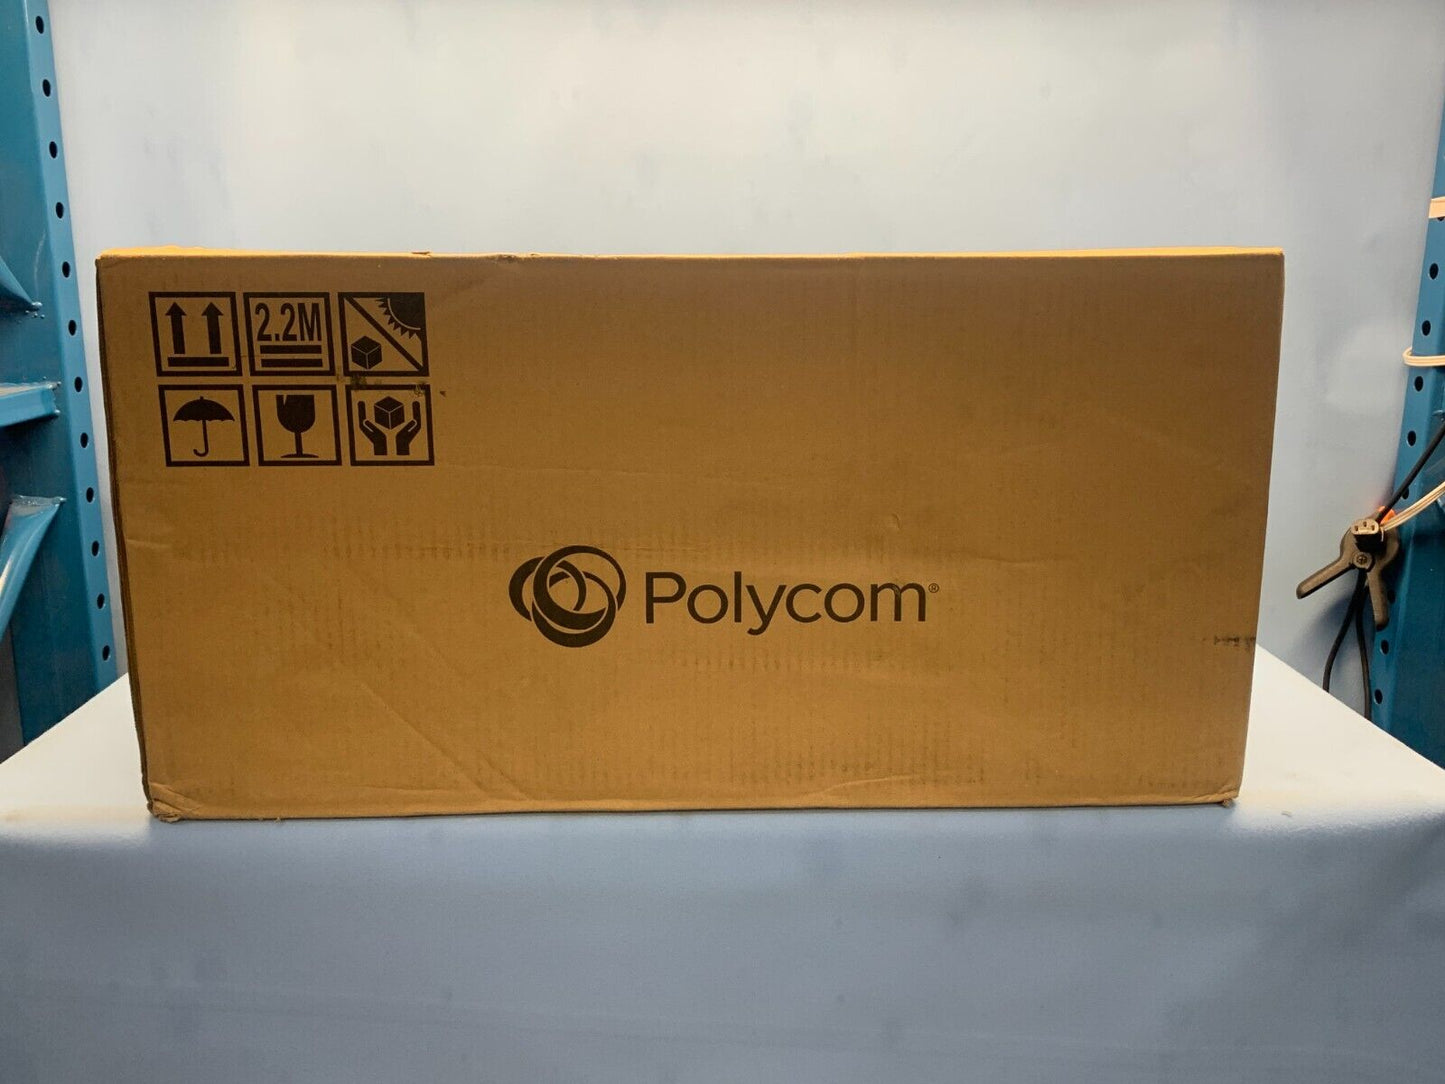 Polycom 7230-69420-001 EagleEye Director II, Dual EagleEye IV Cameras